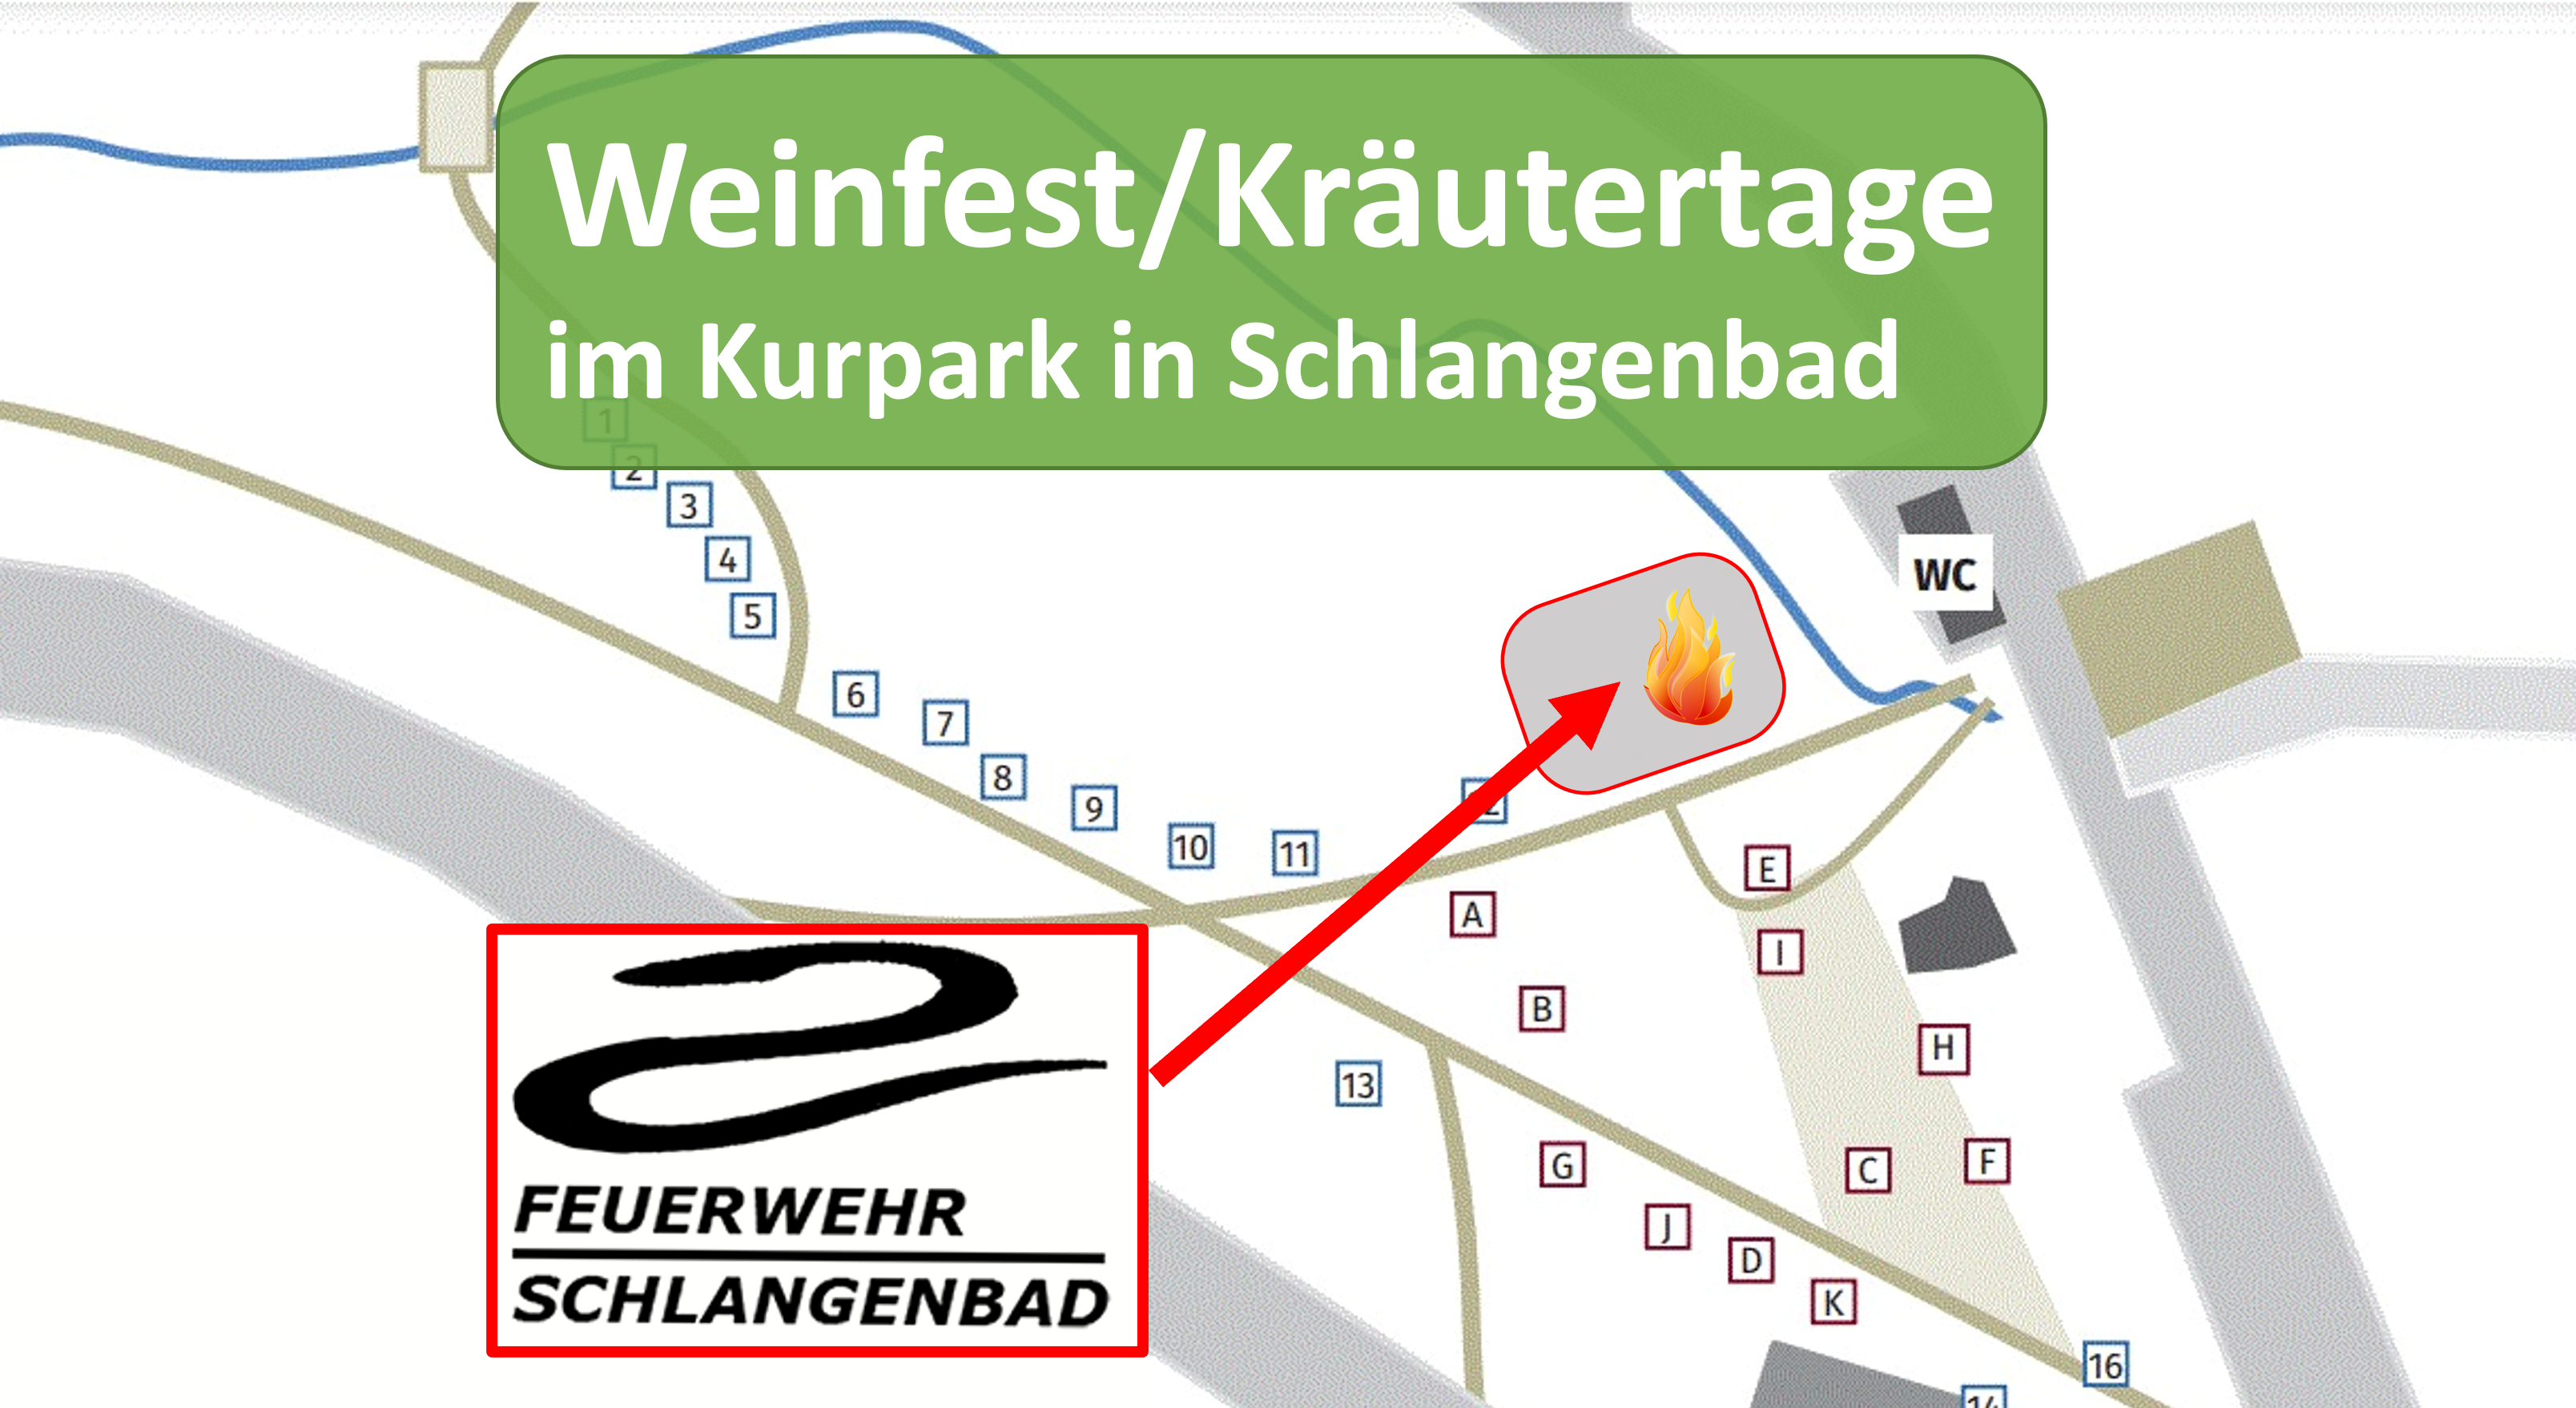 Feuerwehrstand – Weinfest/Kräutertage am Pfingstwochenende 2022